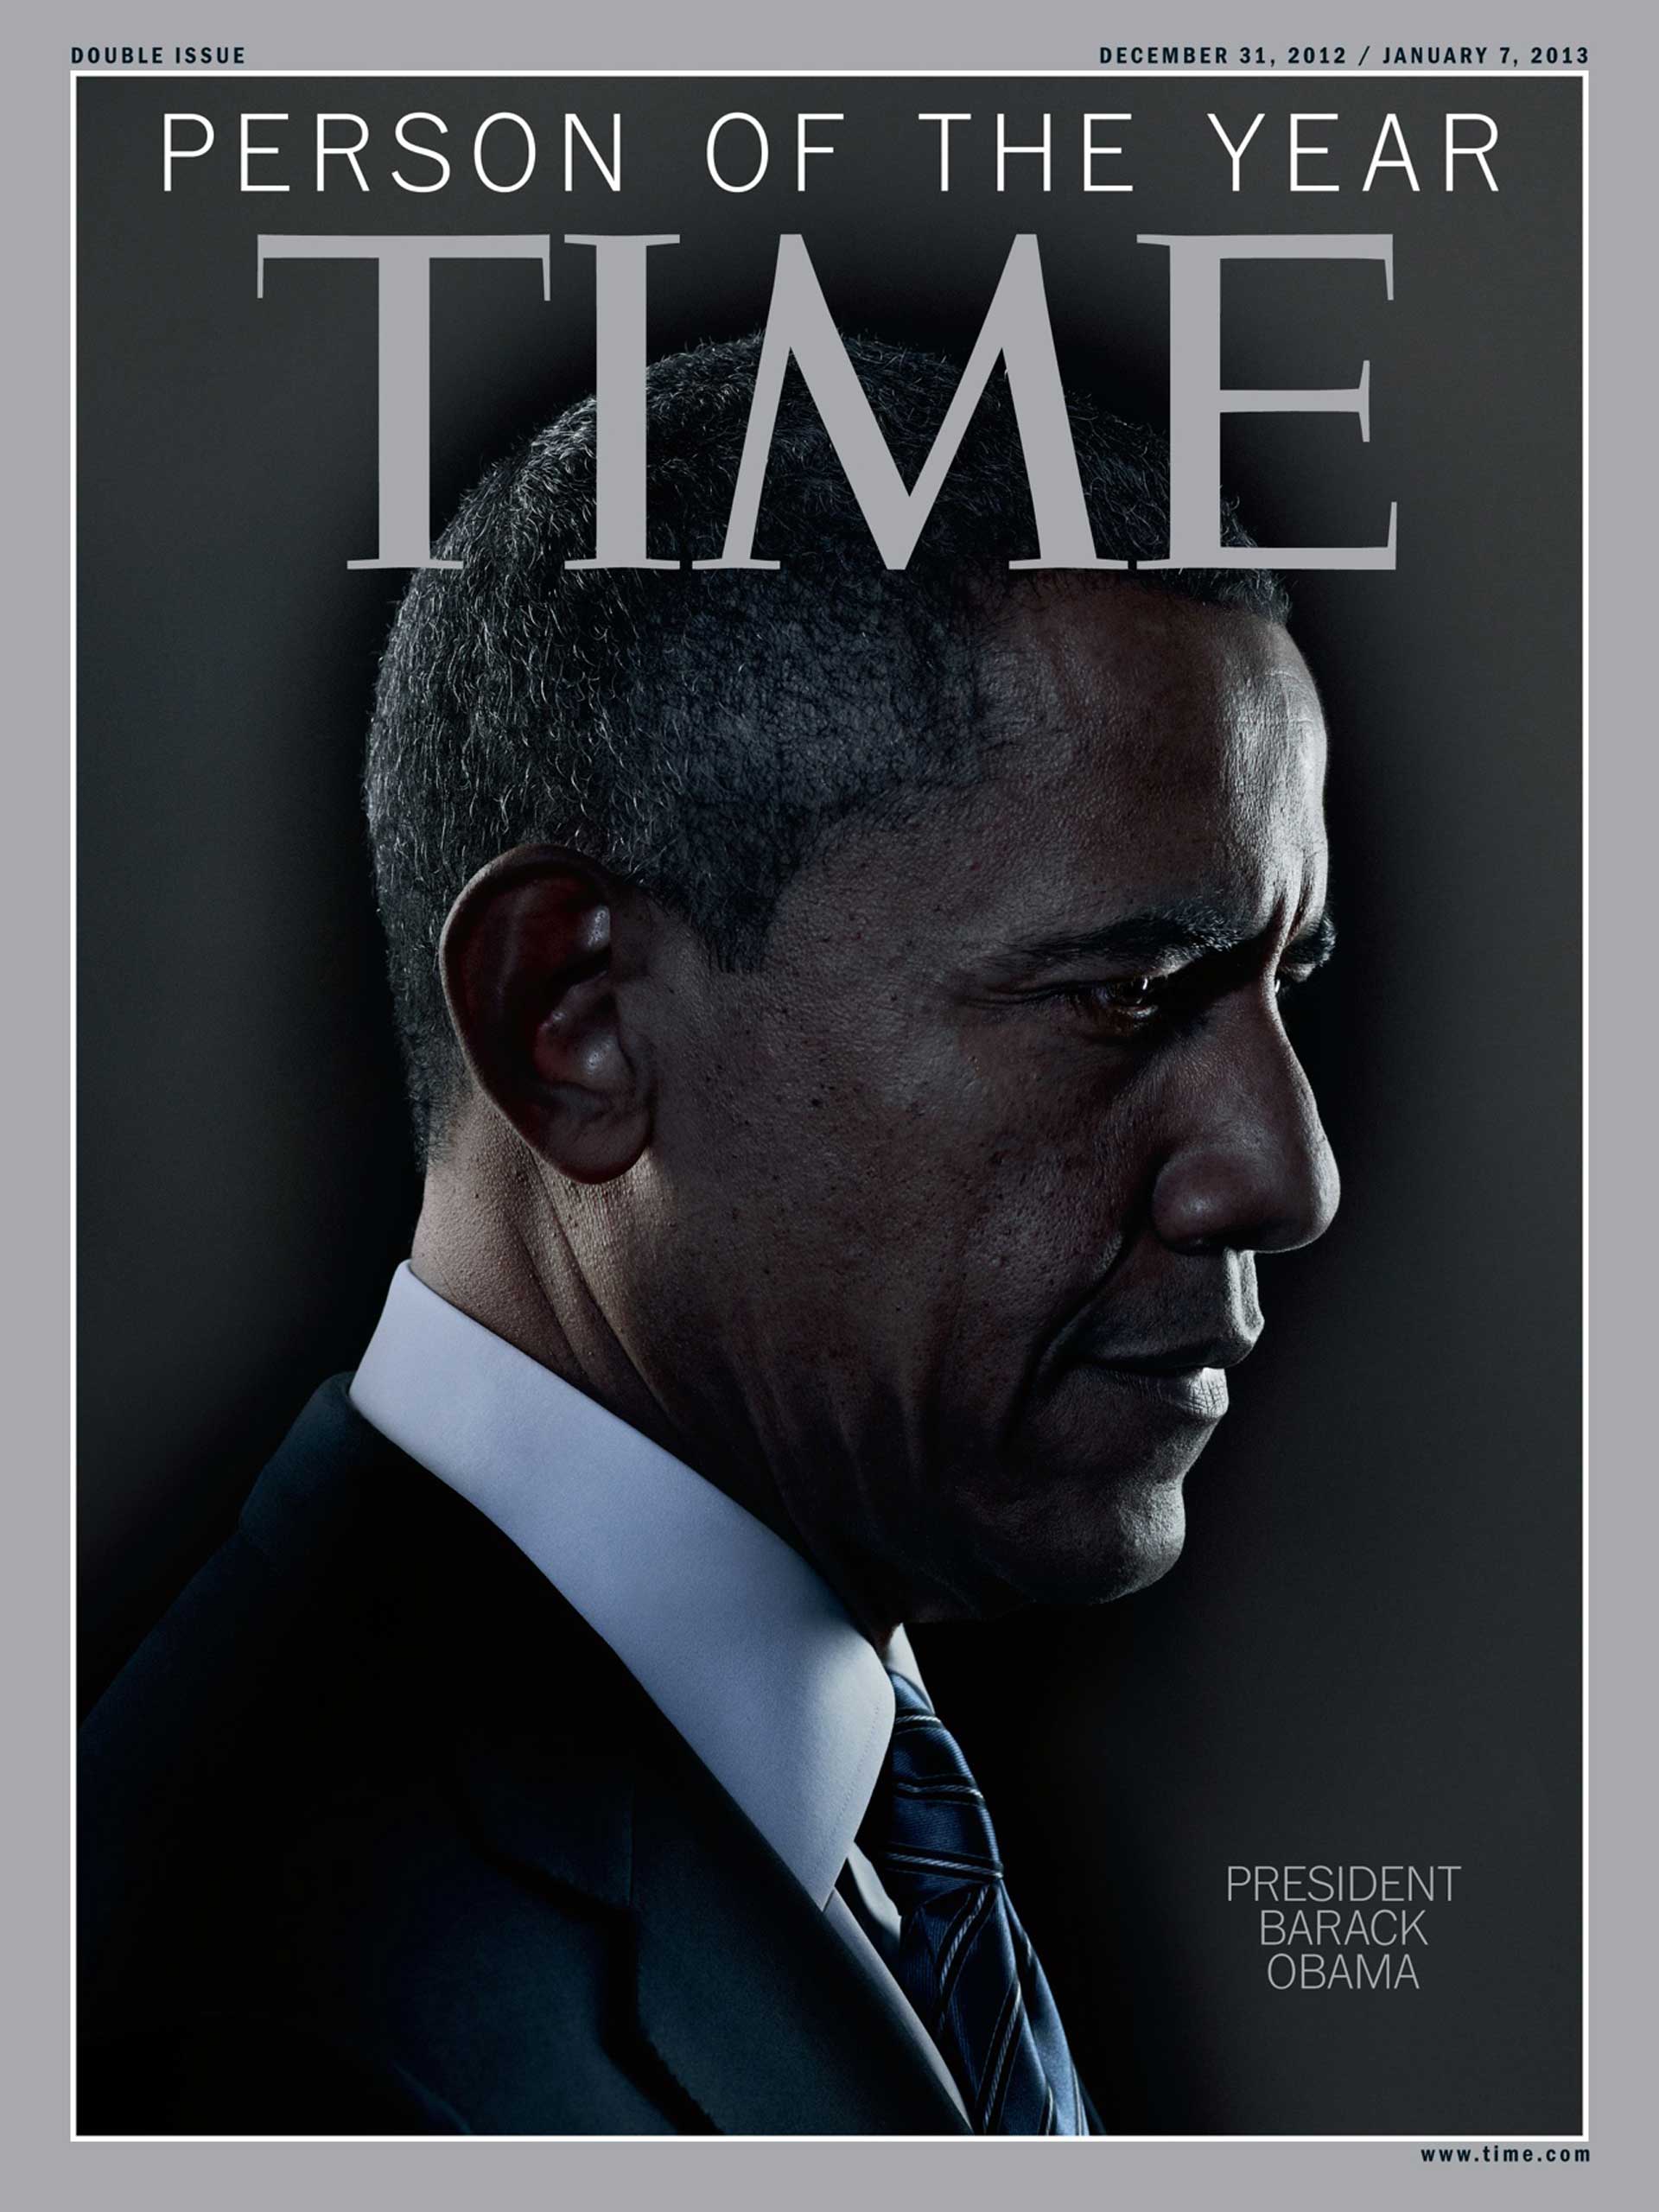 2012: Barack Obama